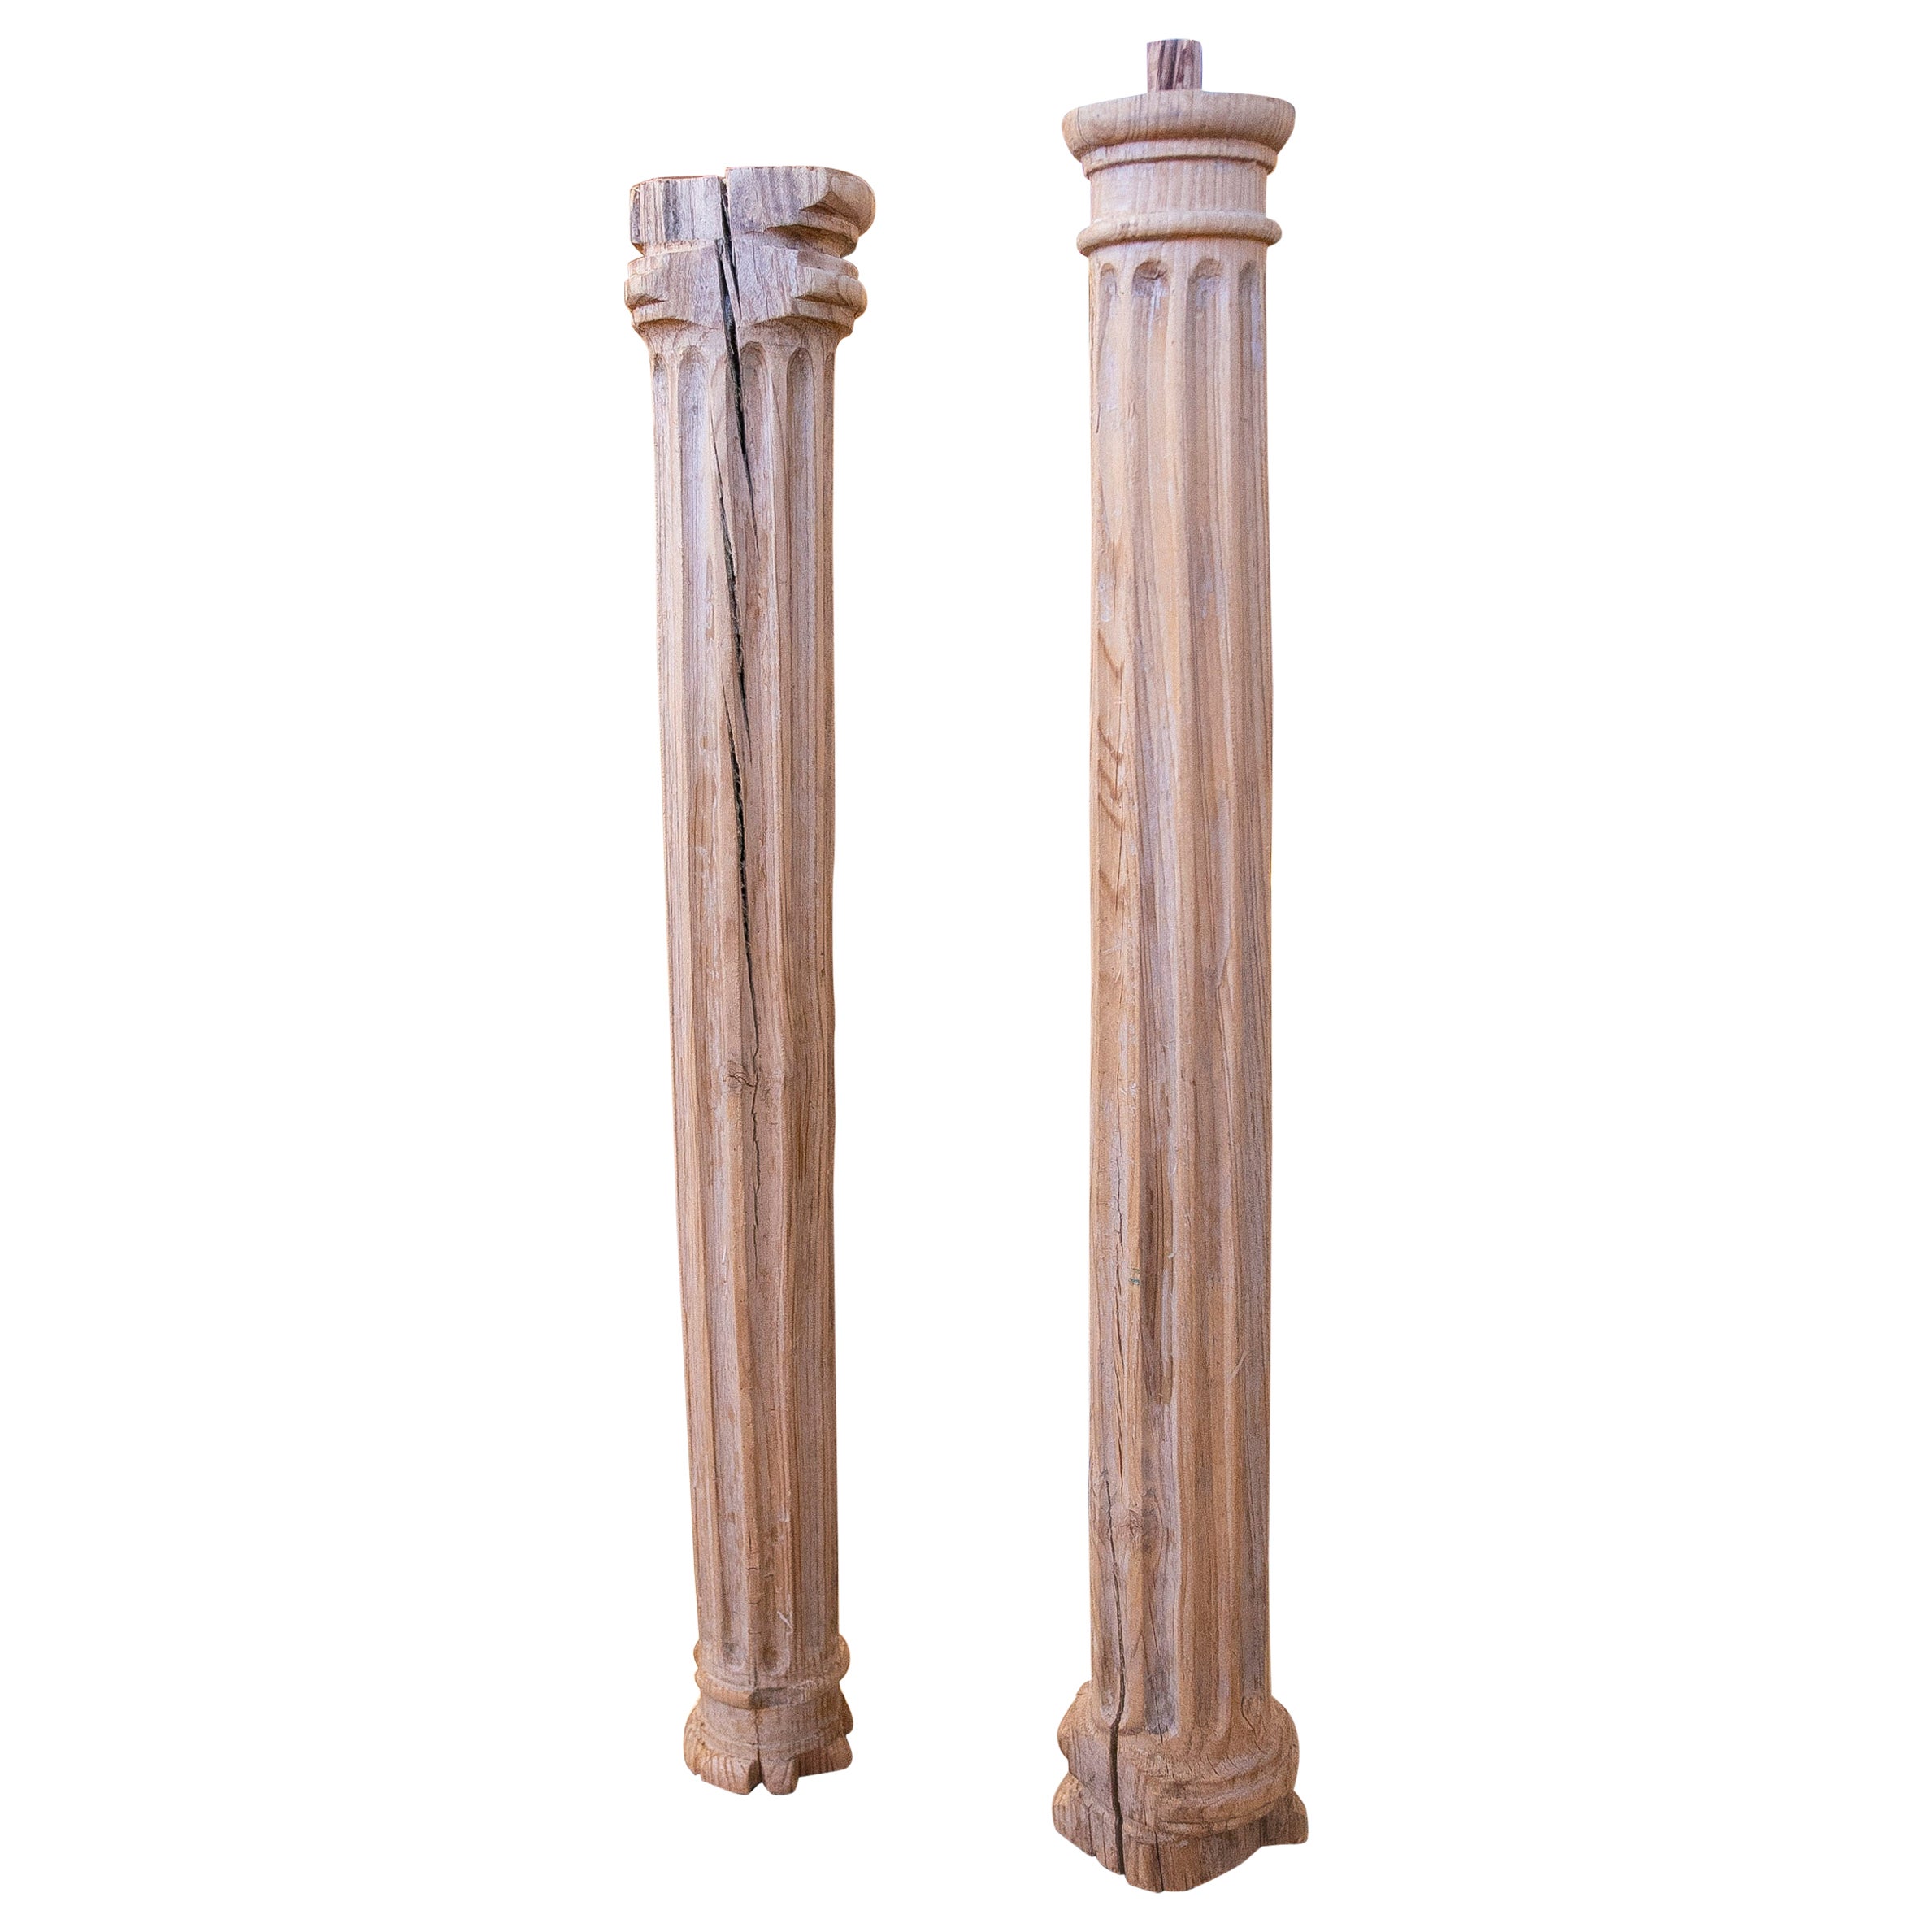 Paire de colonnes cannelées en bois sculptées à la main, de couleur naturelle